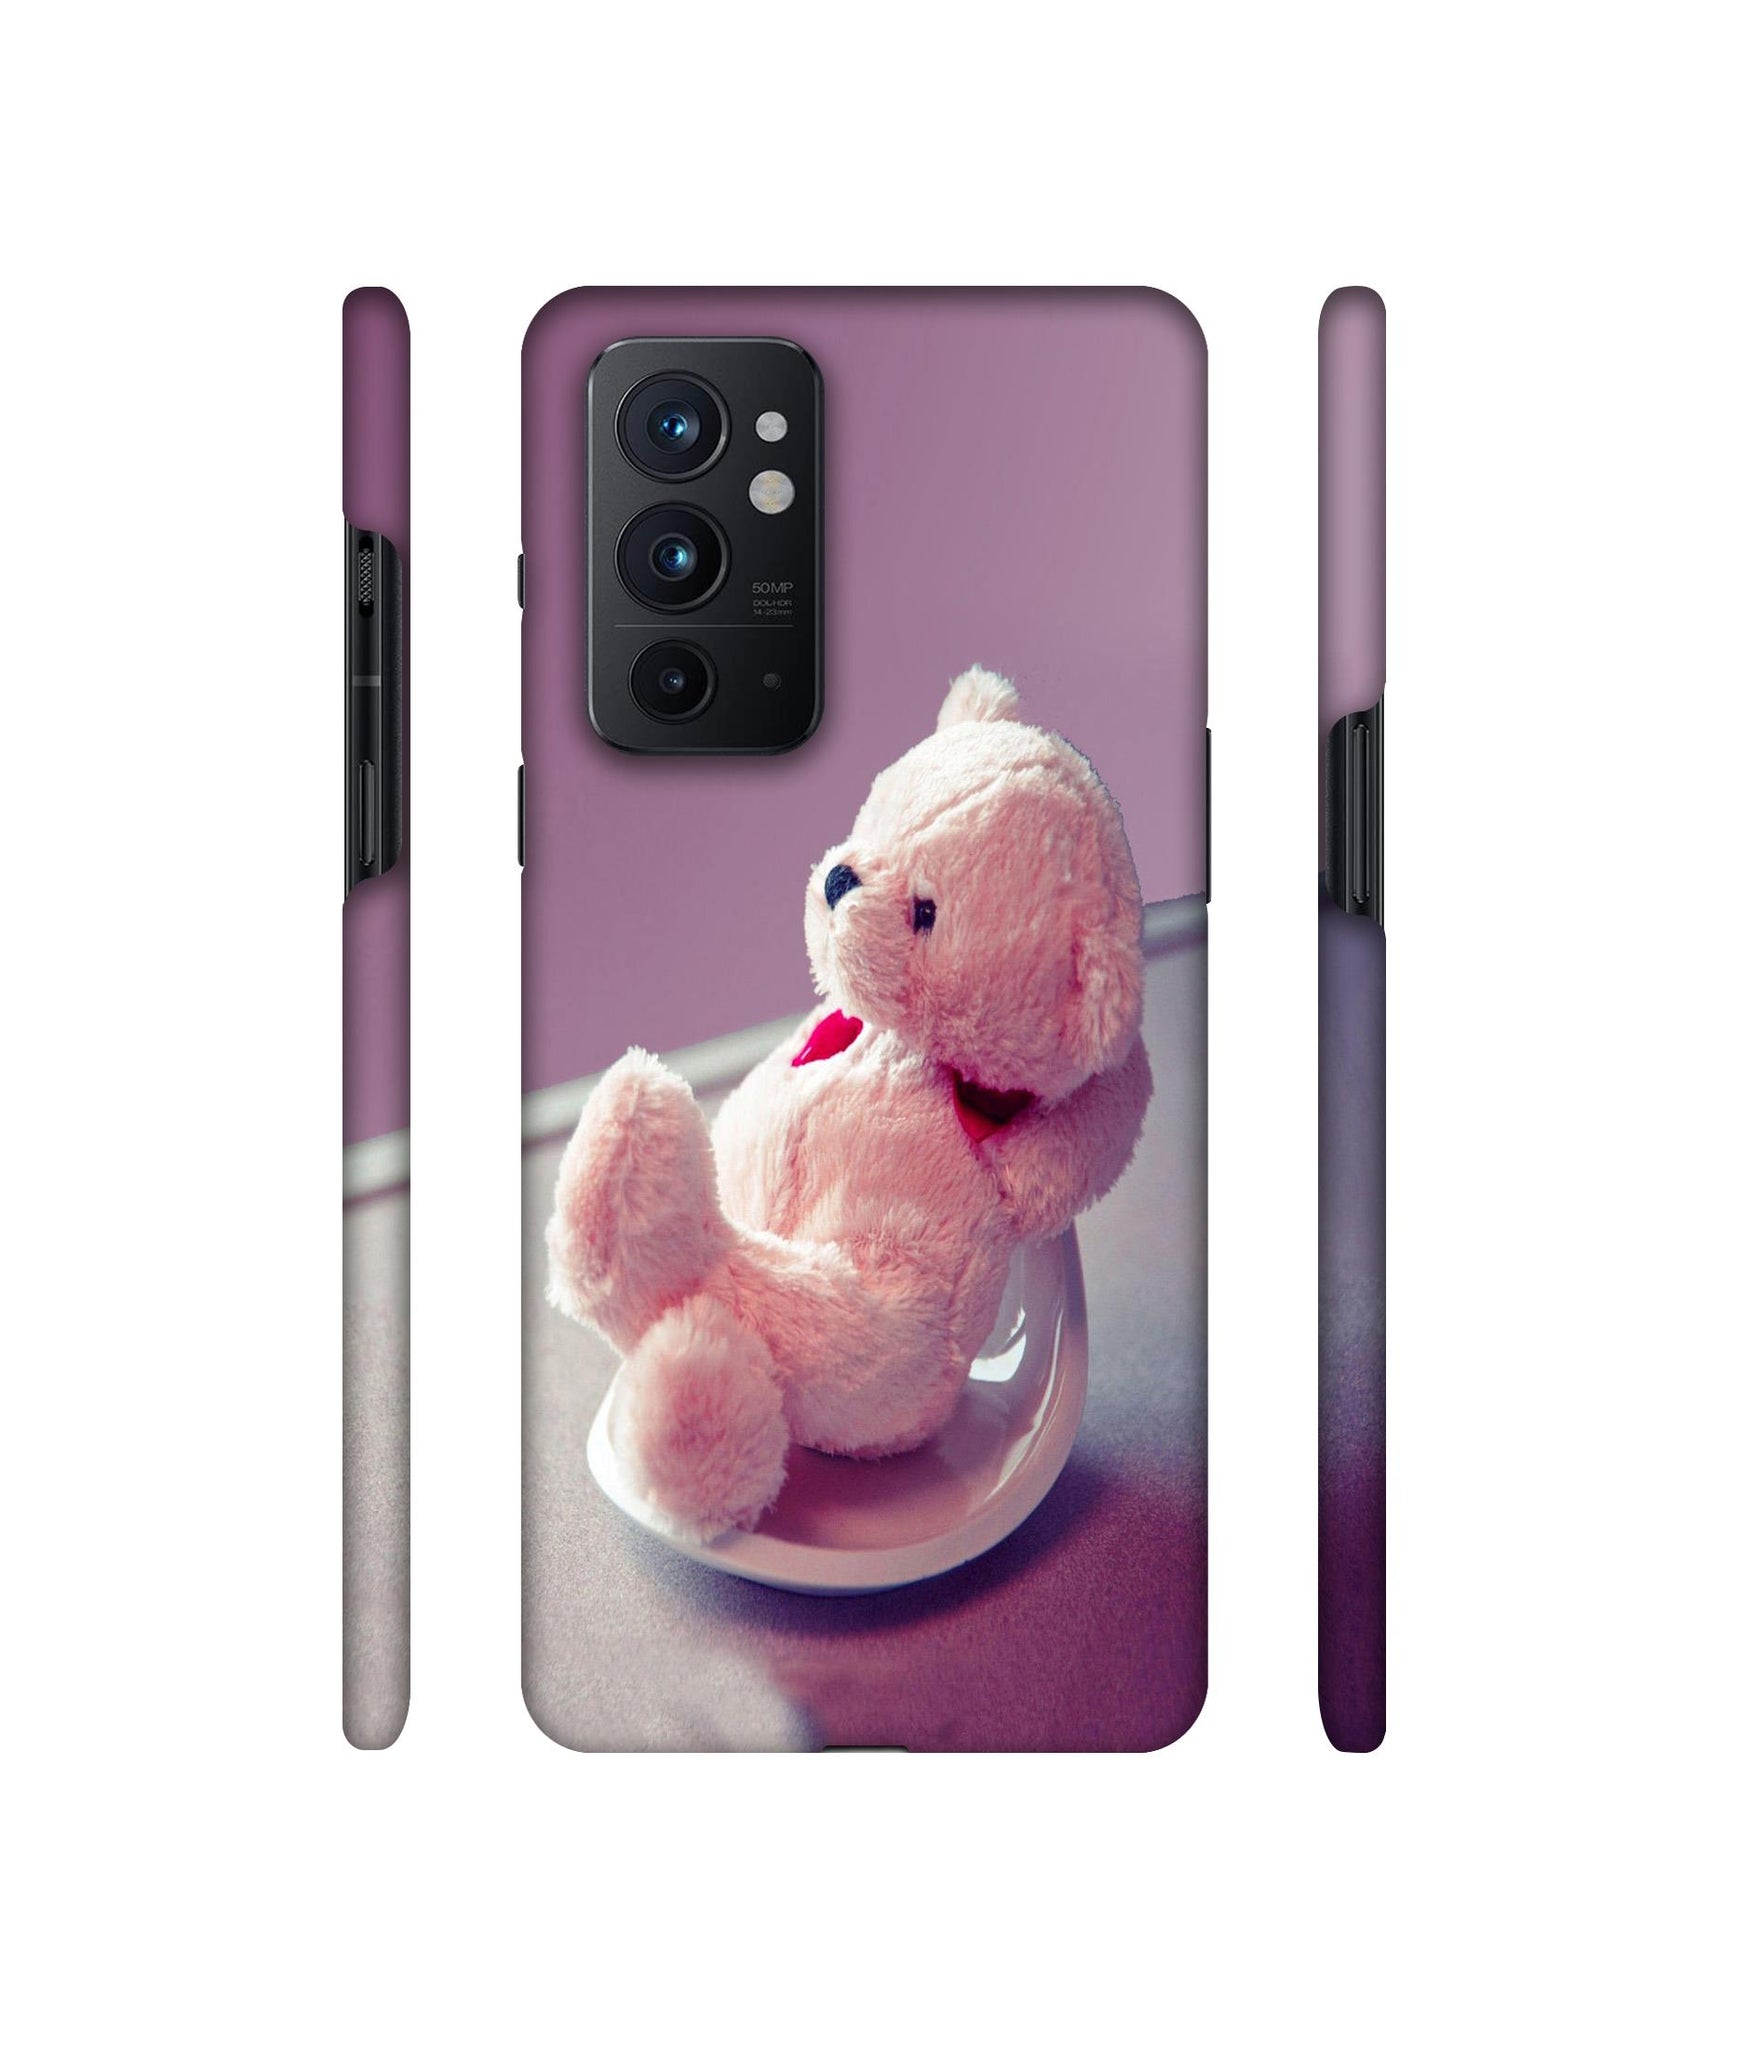 Cute Teddy Bear Designer Hard Back Cover for OnePlus 9RT 5G